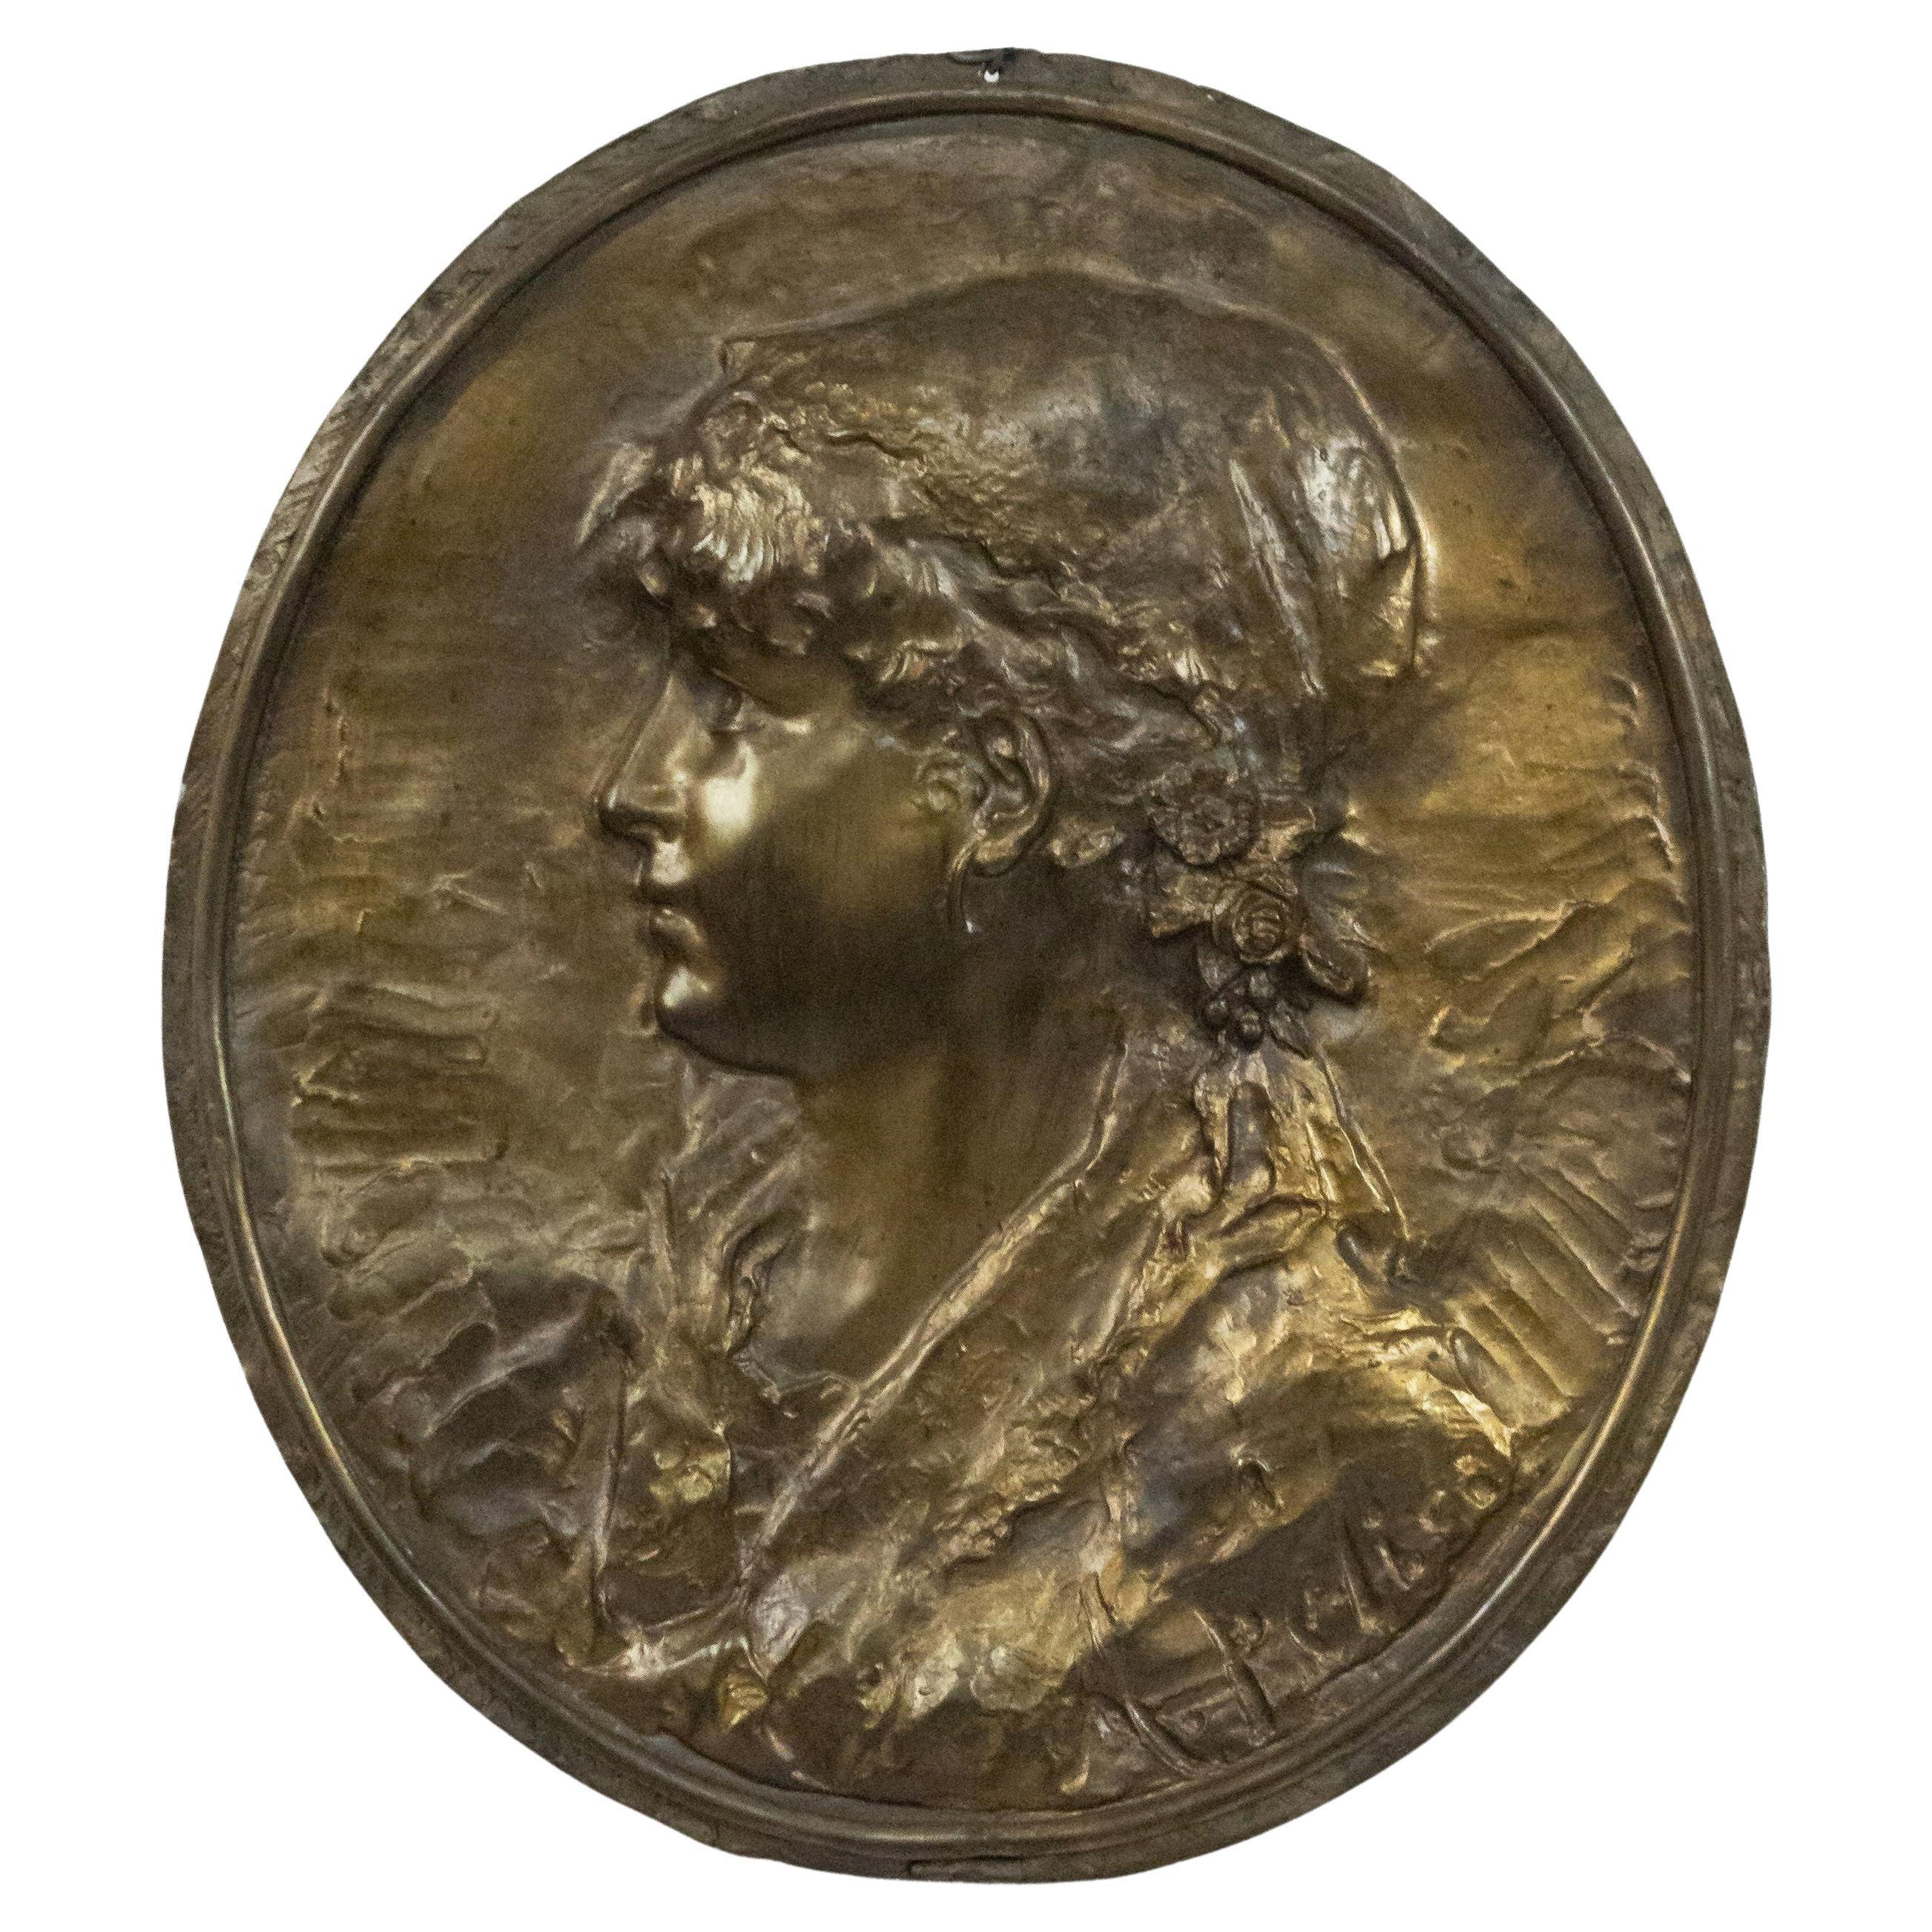 Wandplakette eines jungen Mädchens aus viktorianischem Metall mit Medaillon